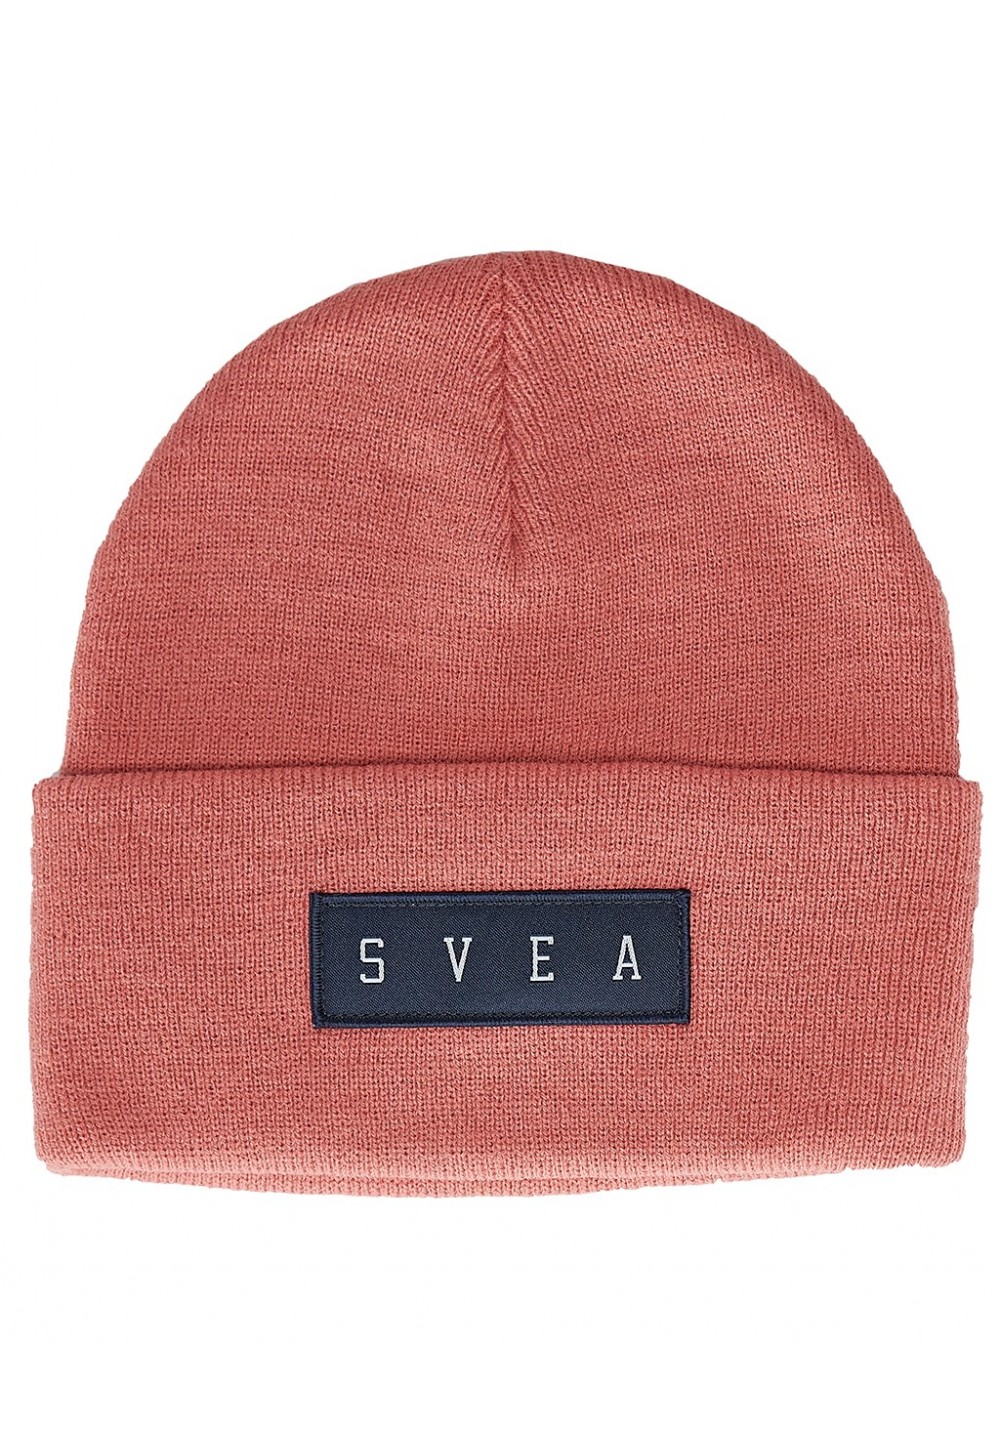  Стильна шапка від бренду SVEA